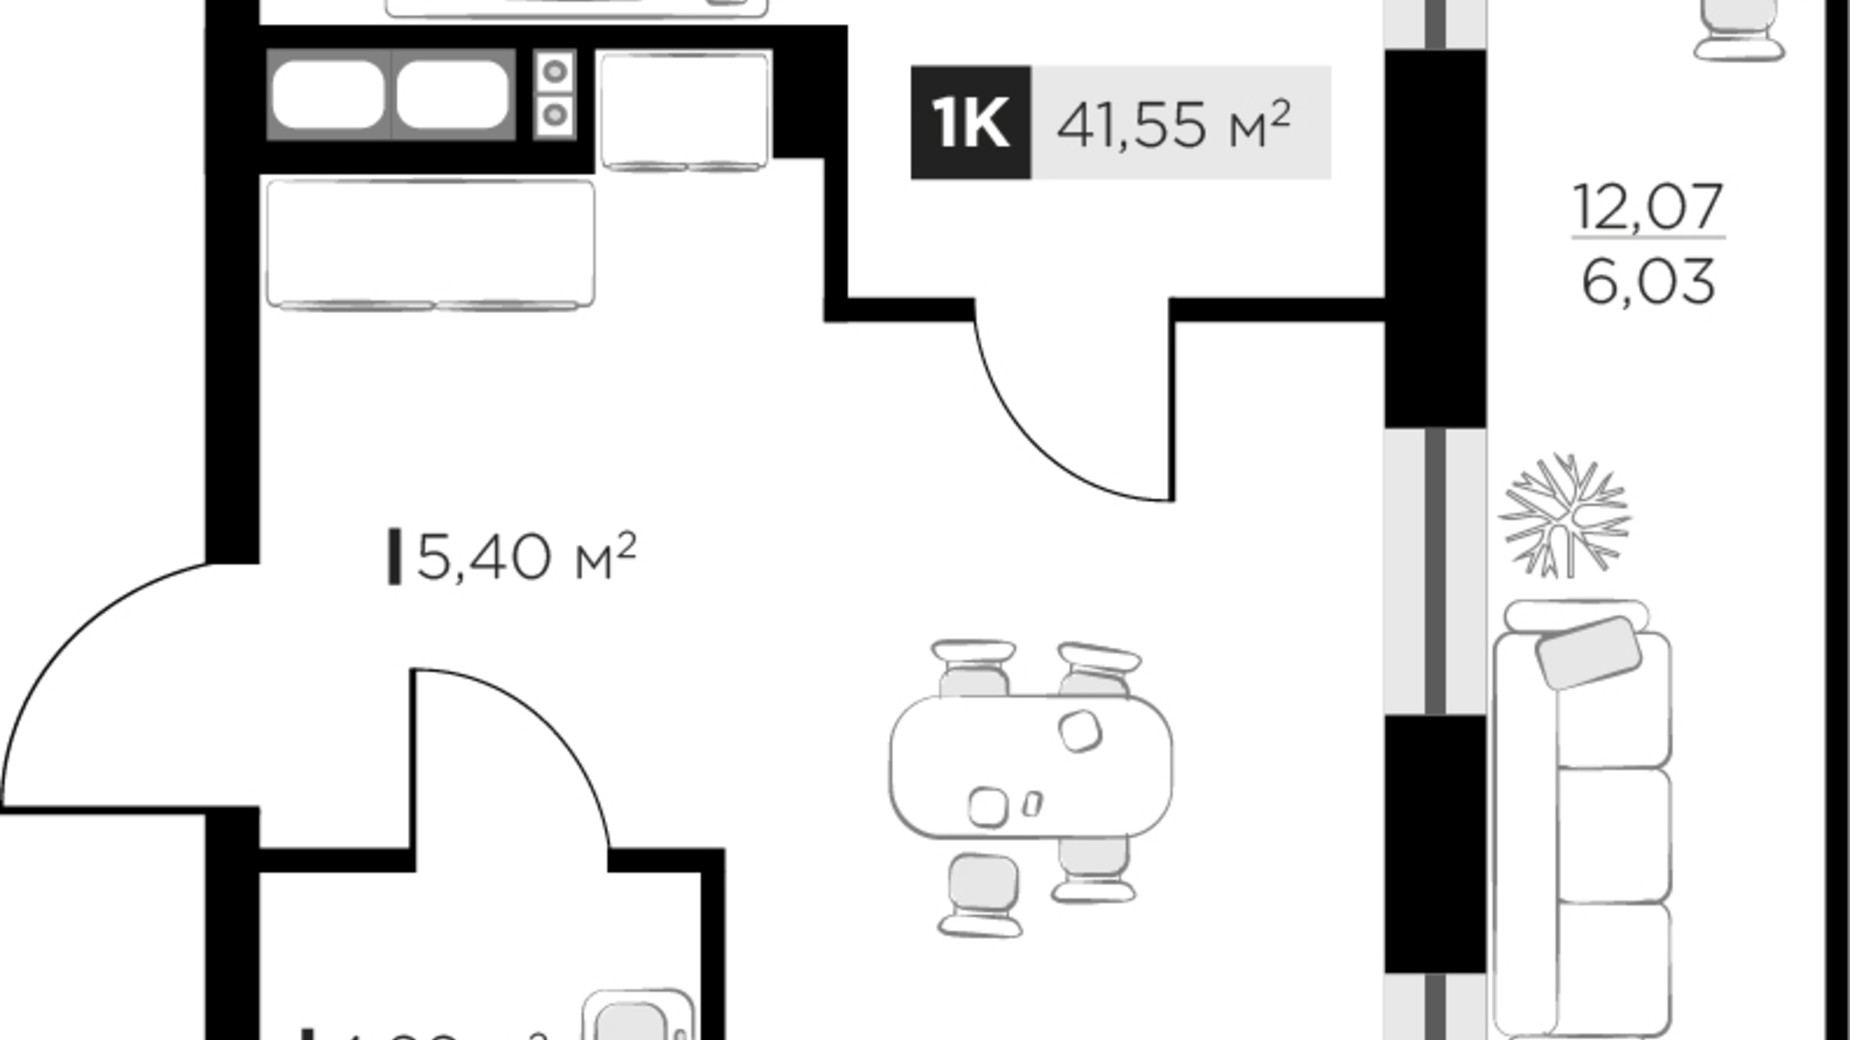 Планировка 1-комнатной квартиры в ЖК SILENT PARK 41.55 м², фото 521149